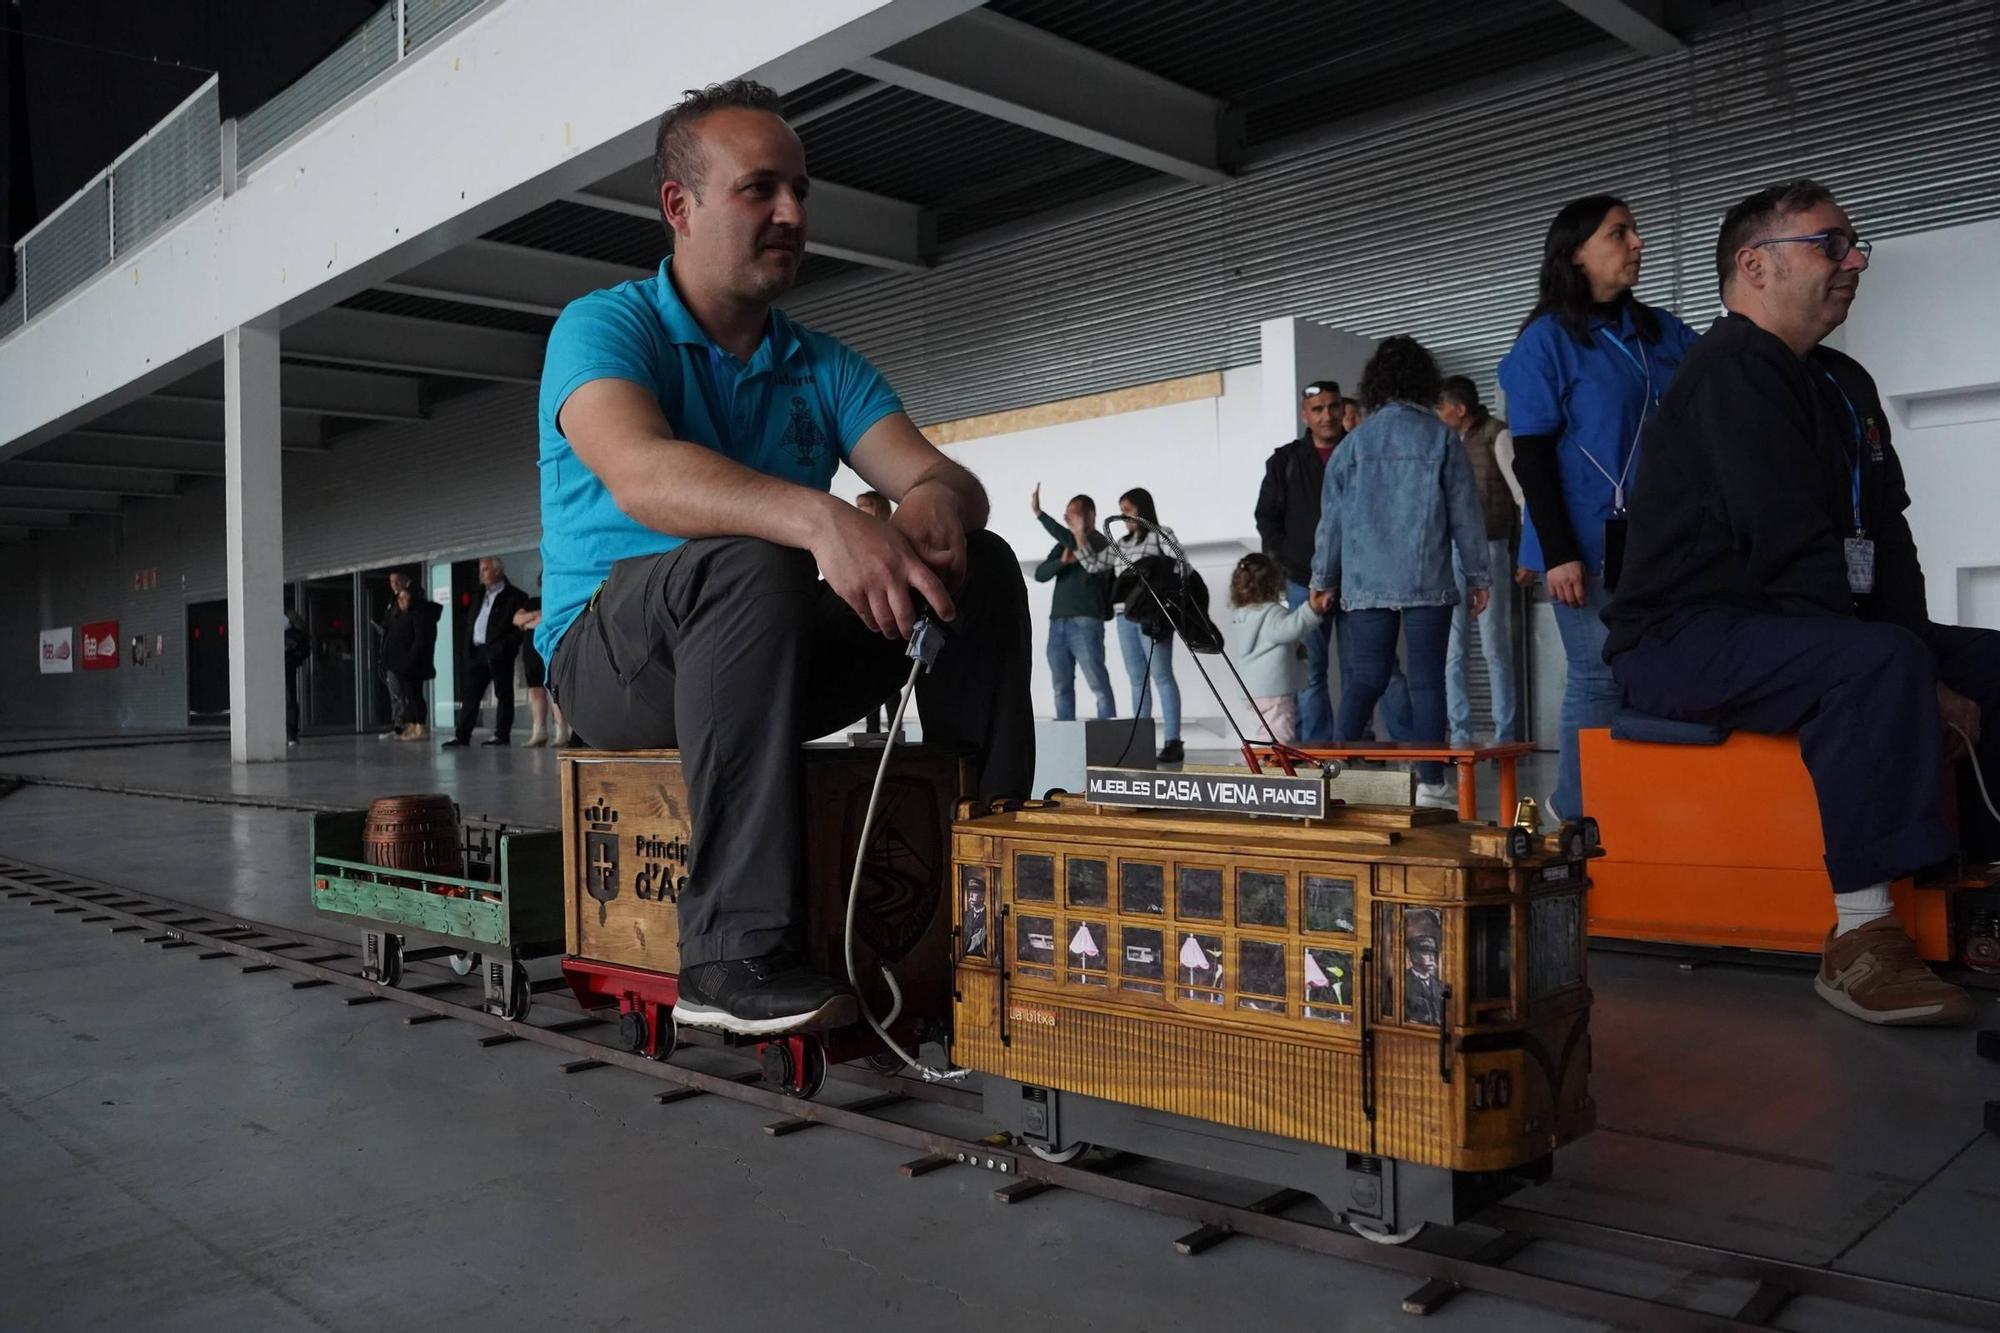 Encuentro de modelismo tripulado, trenes en miniatura